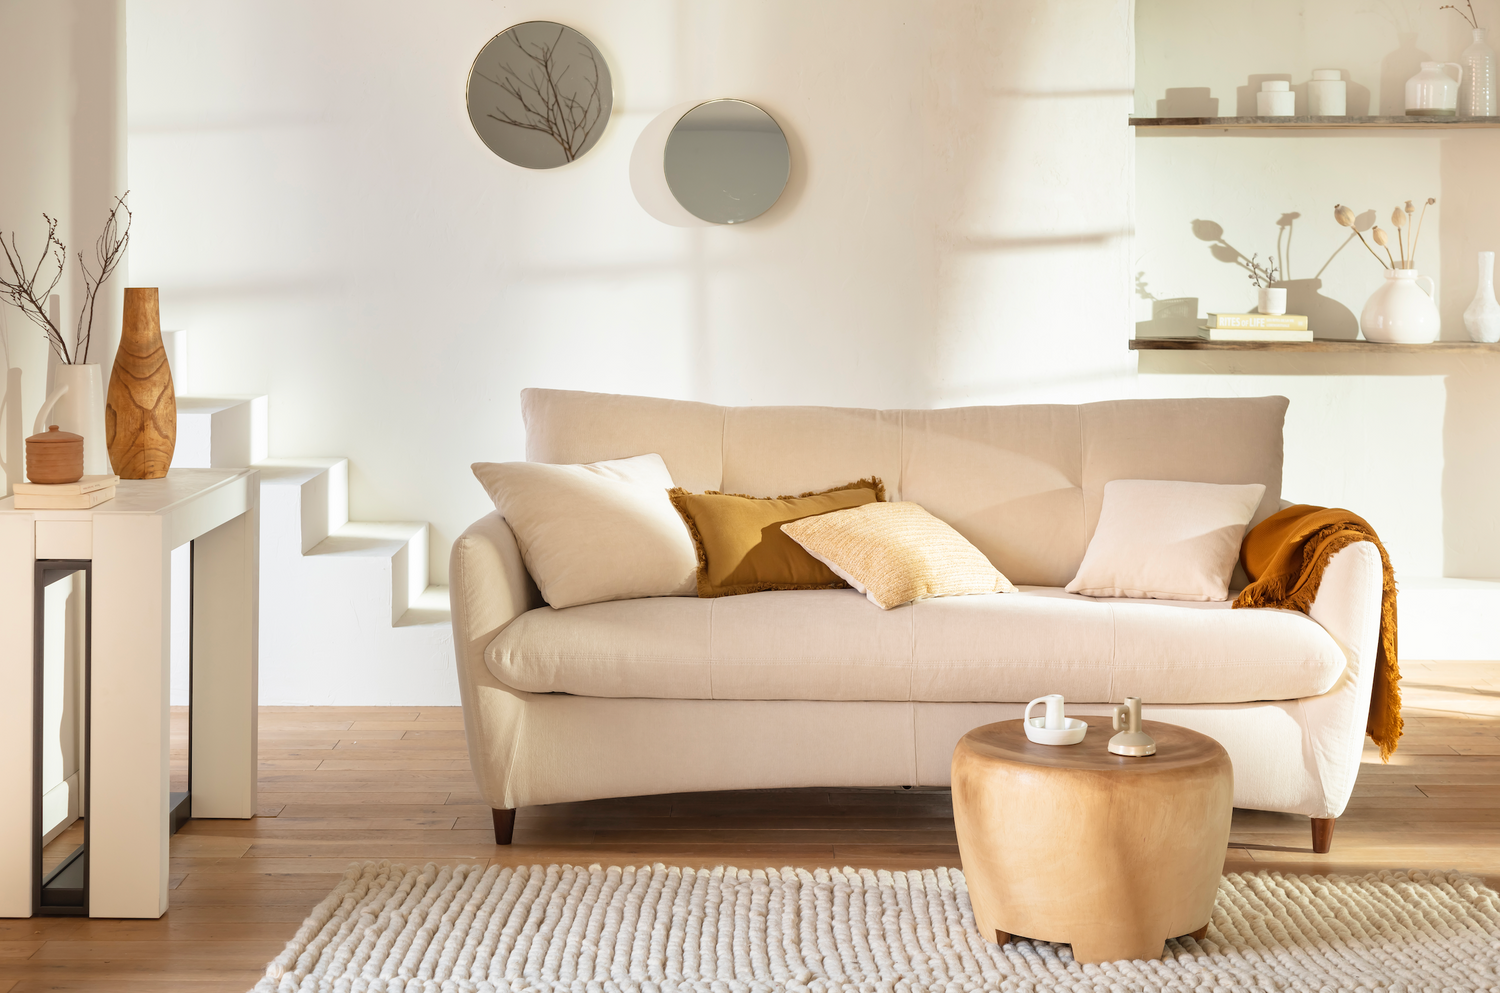 Comment entretenir un canapé blanc ? – La Maison Convertible